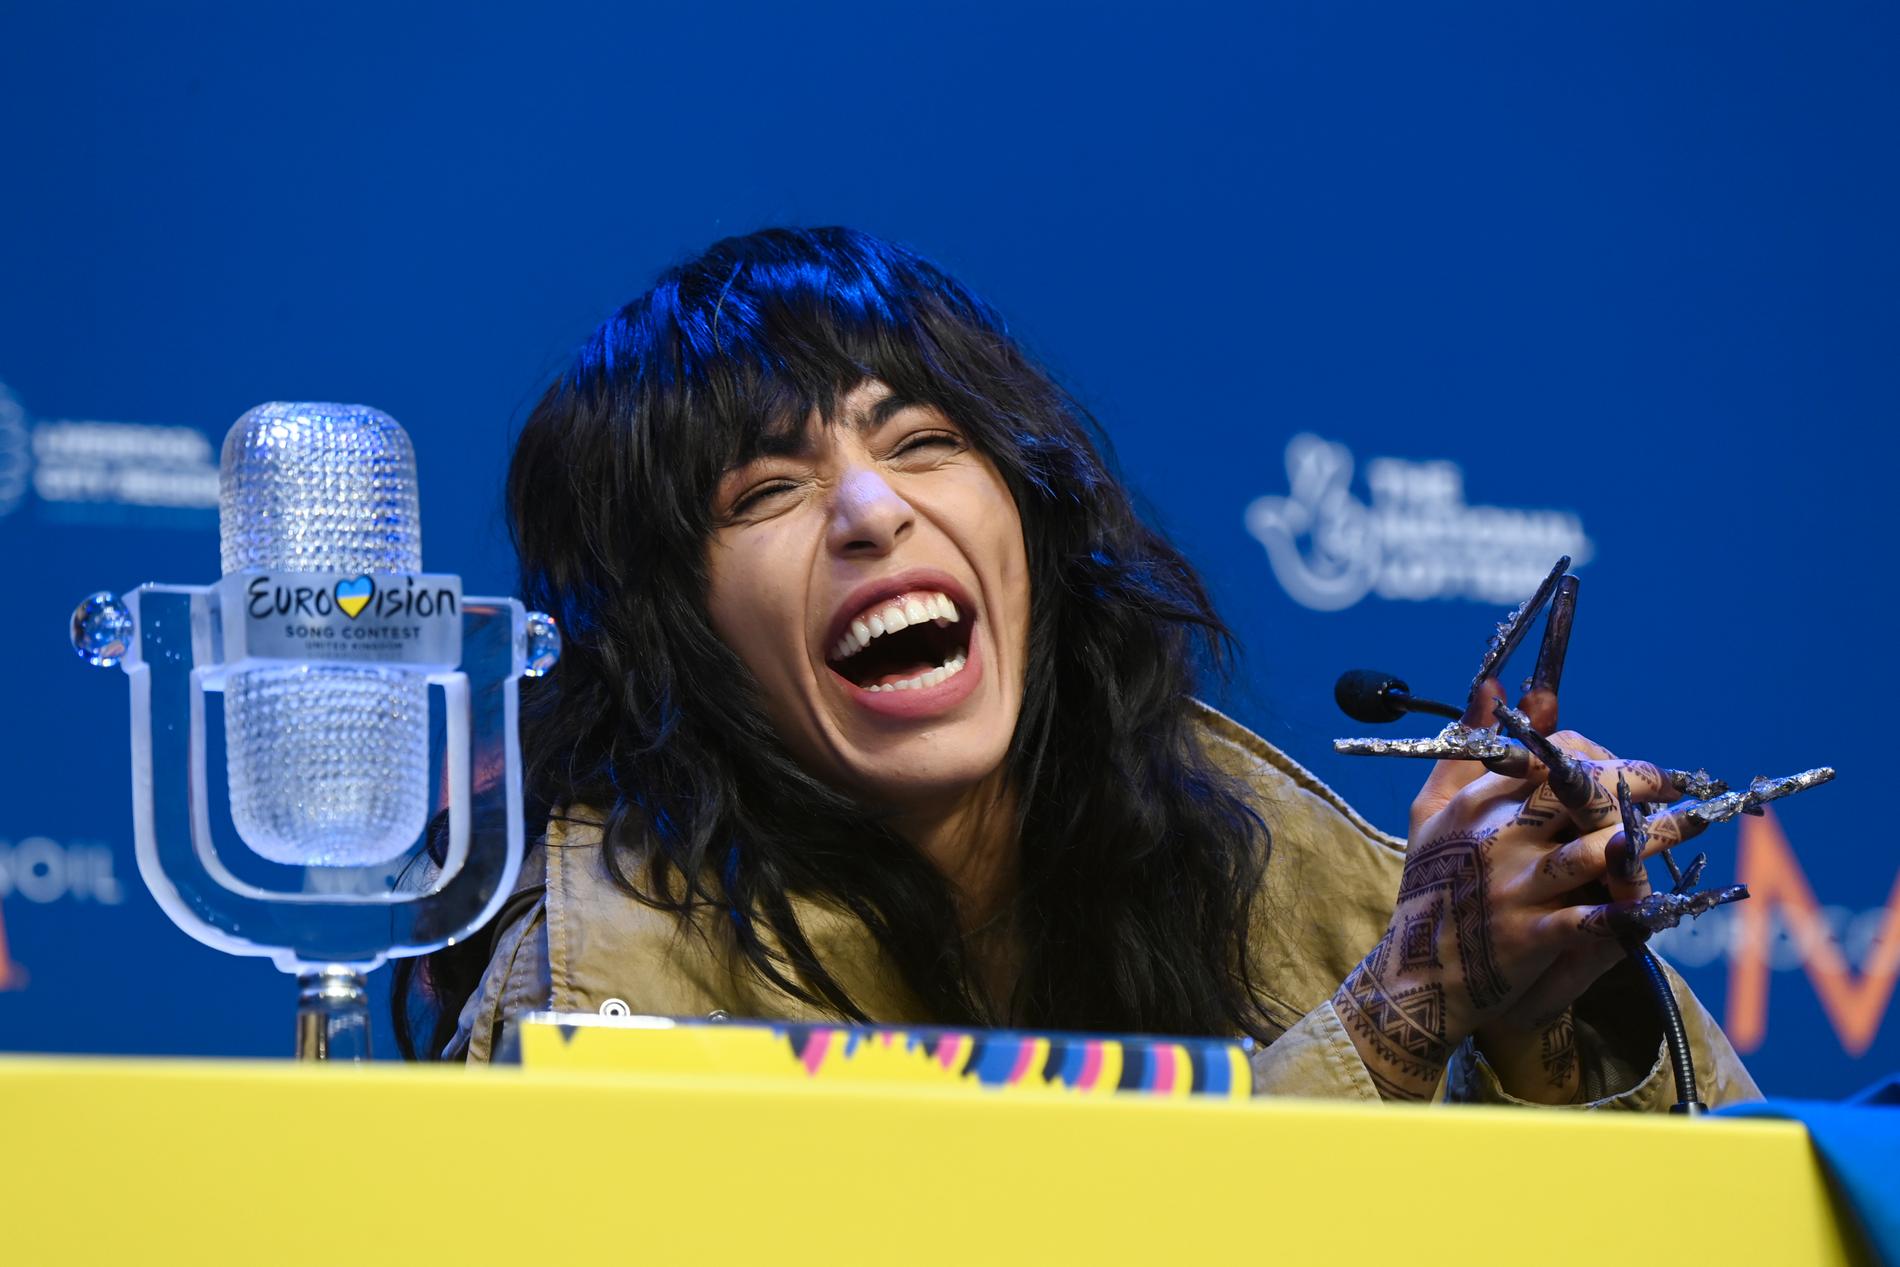 Förra året vann Loreen Melodifestivalen och lyckades dessutom vinna i Eurovision. 